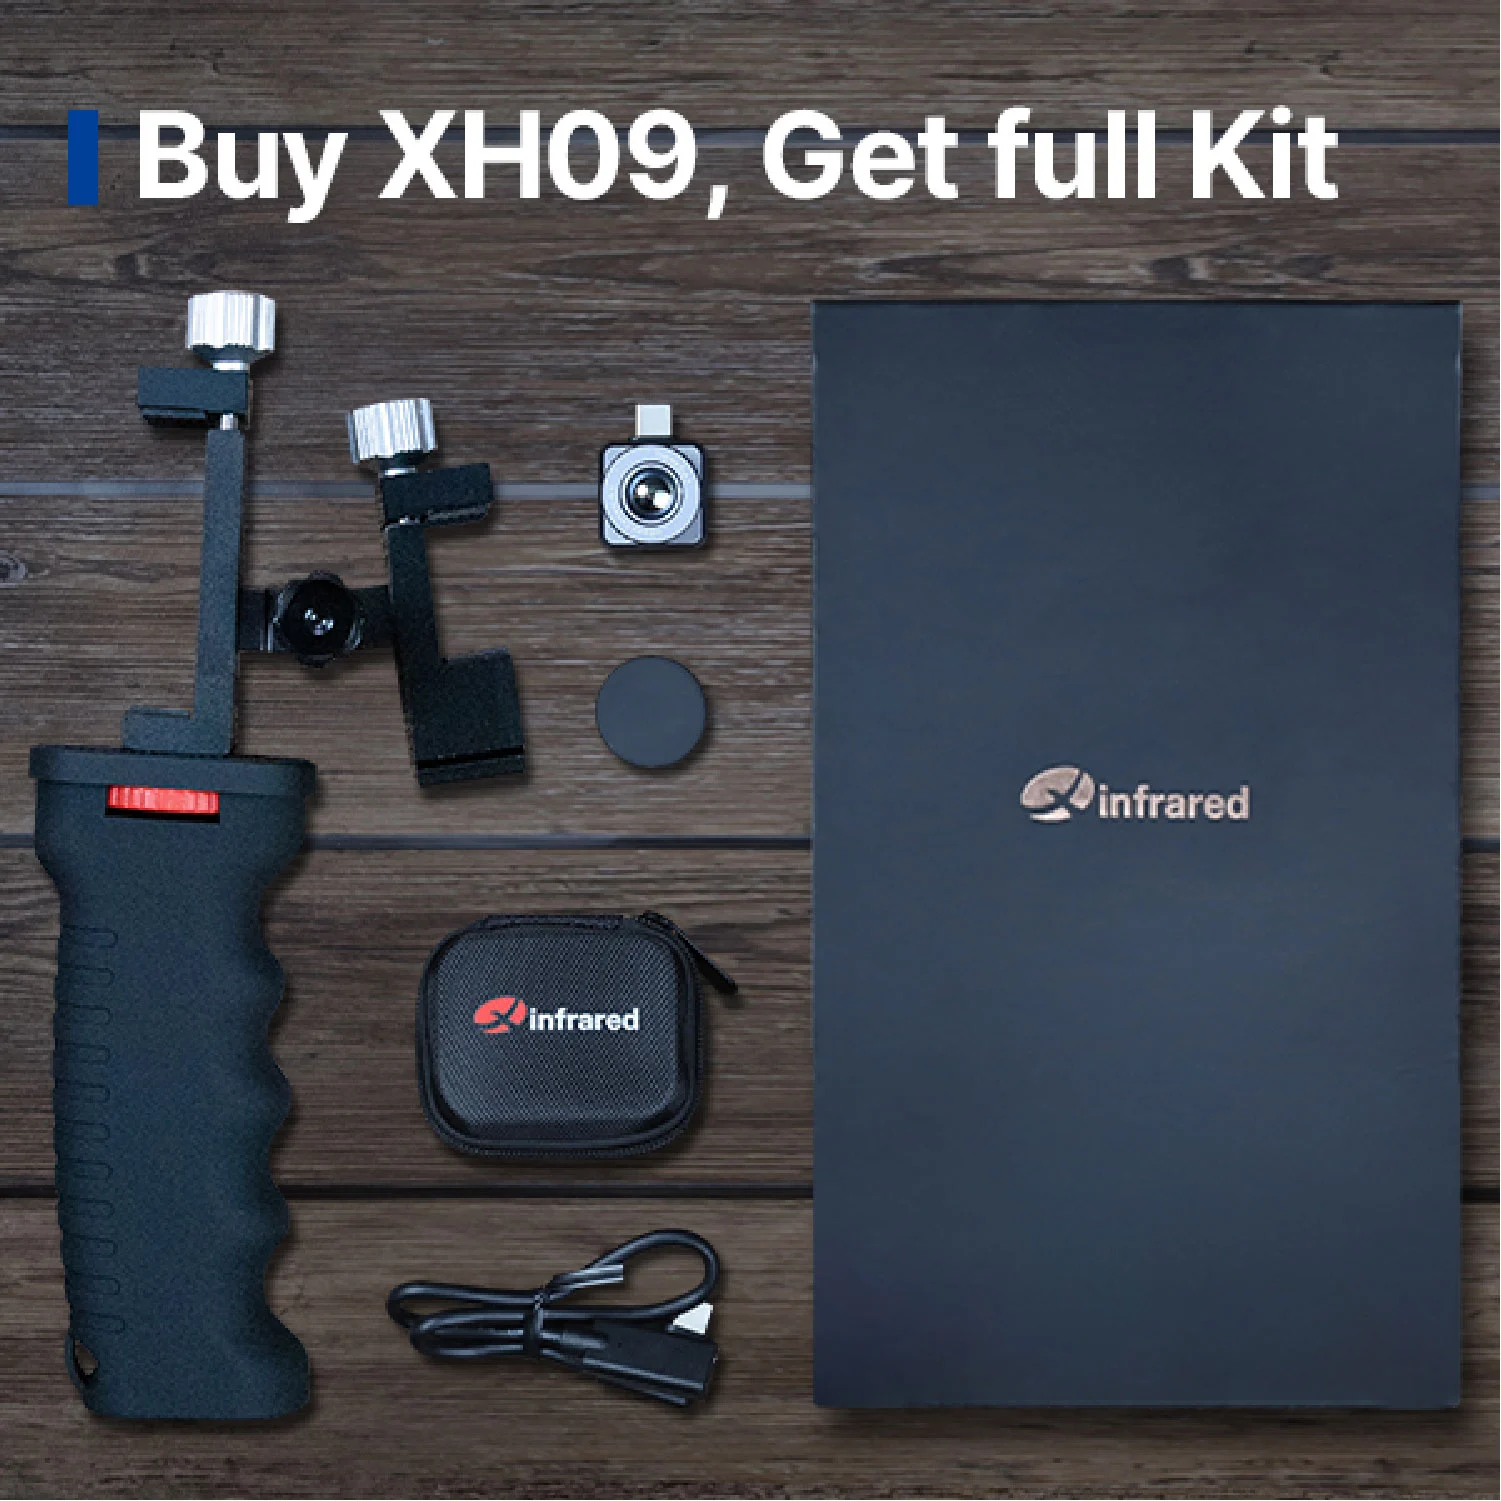 شراء XH09 ، والحصول على مجموعة كاملة